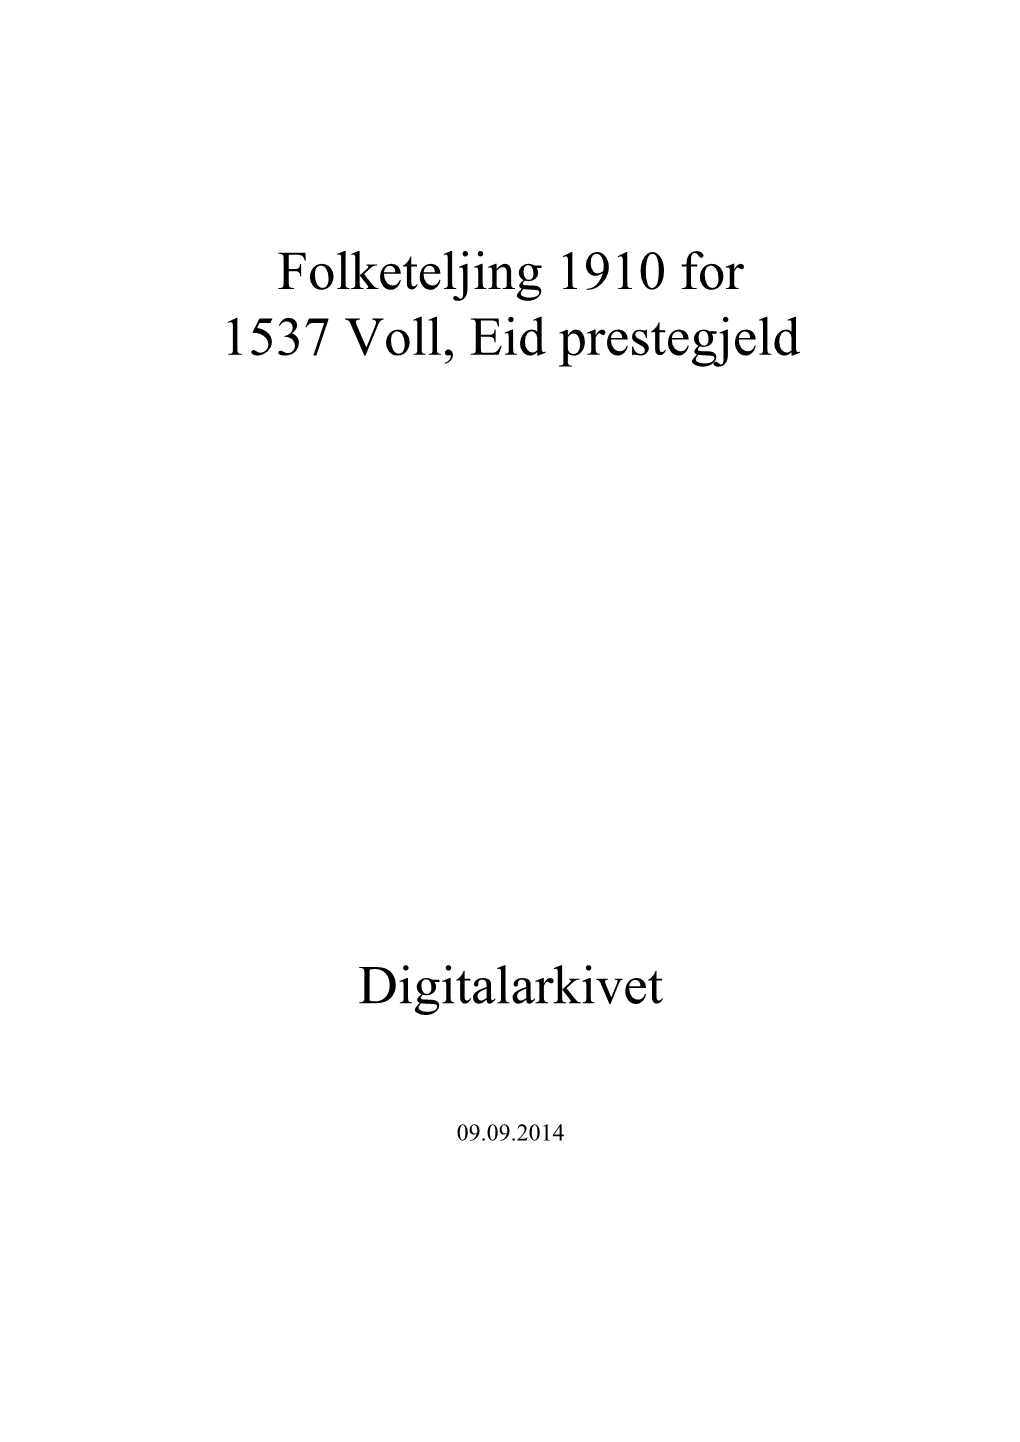 Folketeljing 1910 for 1537 Voll, Eid Prestegjeld Digitalarkivet